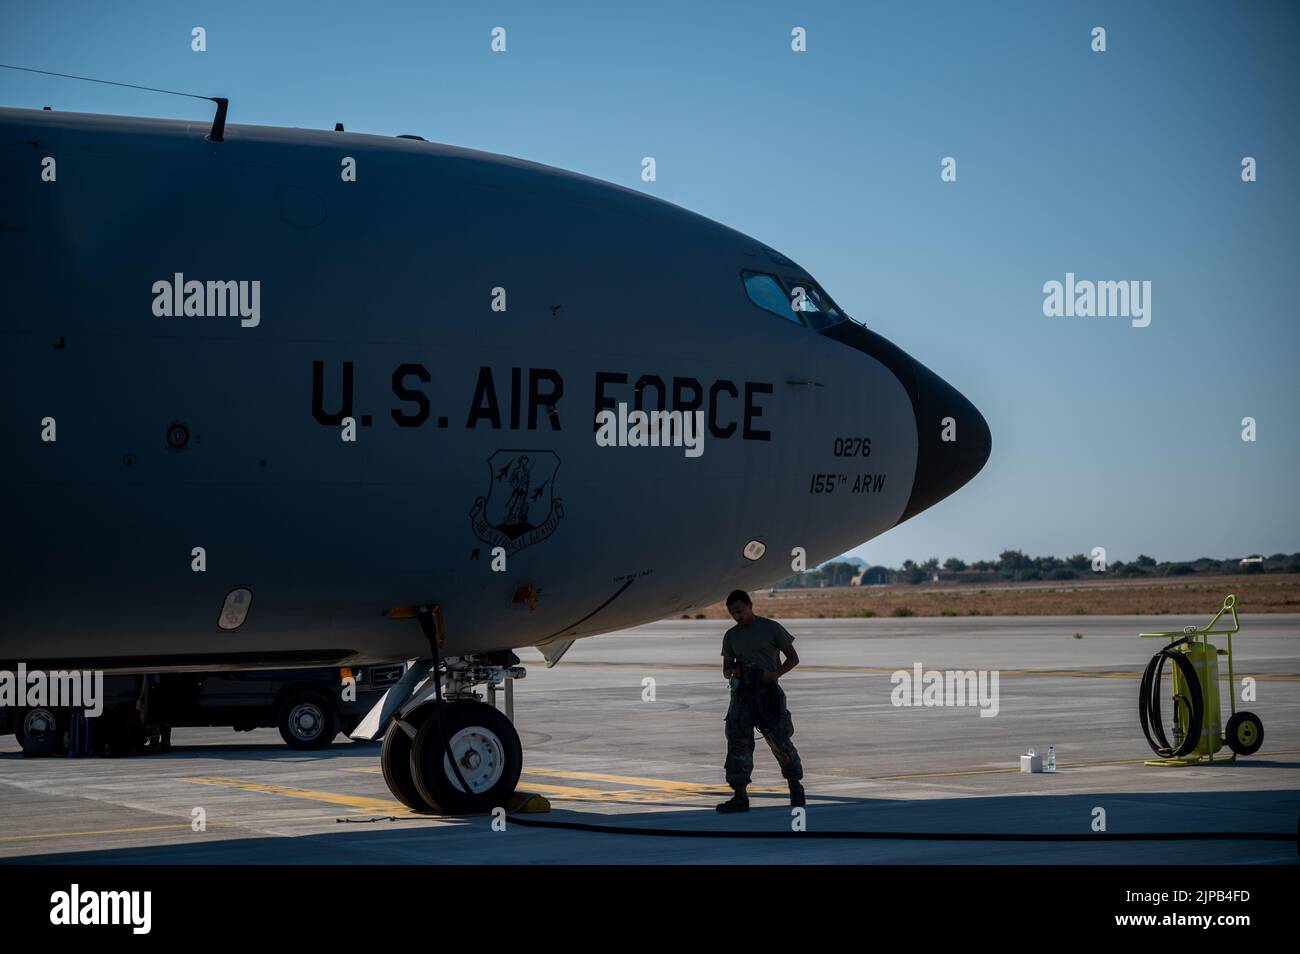 Un jefe de la tripulación de la Fuerza Aérea KC-135 Stratotanker asignado al Escuadrón de Reabastecimiento Aéreo Expedicionario 340th realiza comprobaciones previas al vuelo de su aeronave durante un ejercicio de entrenamiento de despliegue rápido en Souda Bay, Grecia, el 12 de agosto de 2022. La tripulación del KC-135 forma parte de un paquete de apoyo Agile Combat Employment que incluía un avión Rich-135W Rivet Joint de la Fuerza Aérea de los Estados Unidos. El Rivet Joint es un avión de inteligencia, vigilancia y reconocimiento, preparado para operaciones dinámicas en una variedad de entornos. (EE. UU Foto de la Fuerza Aérea por el Staff Sgt. Charles T. Fultz) Foto de stock